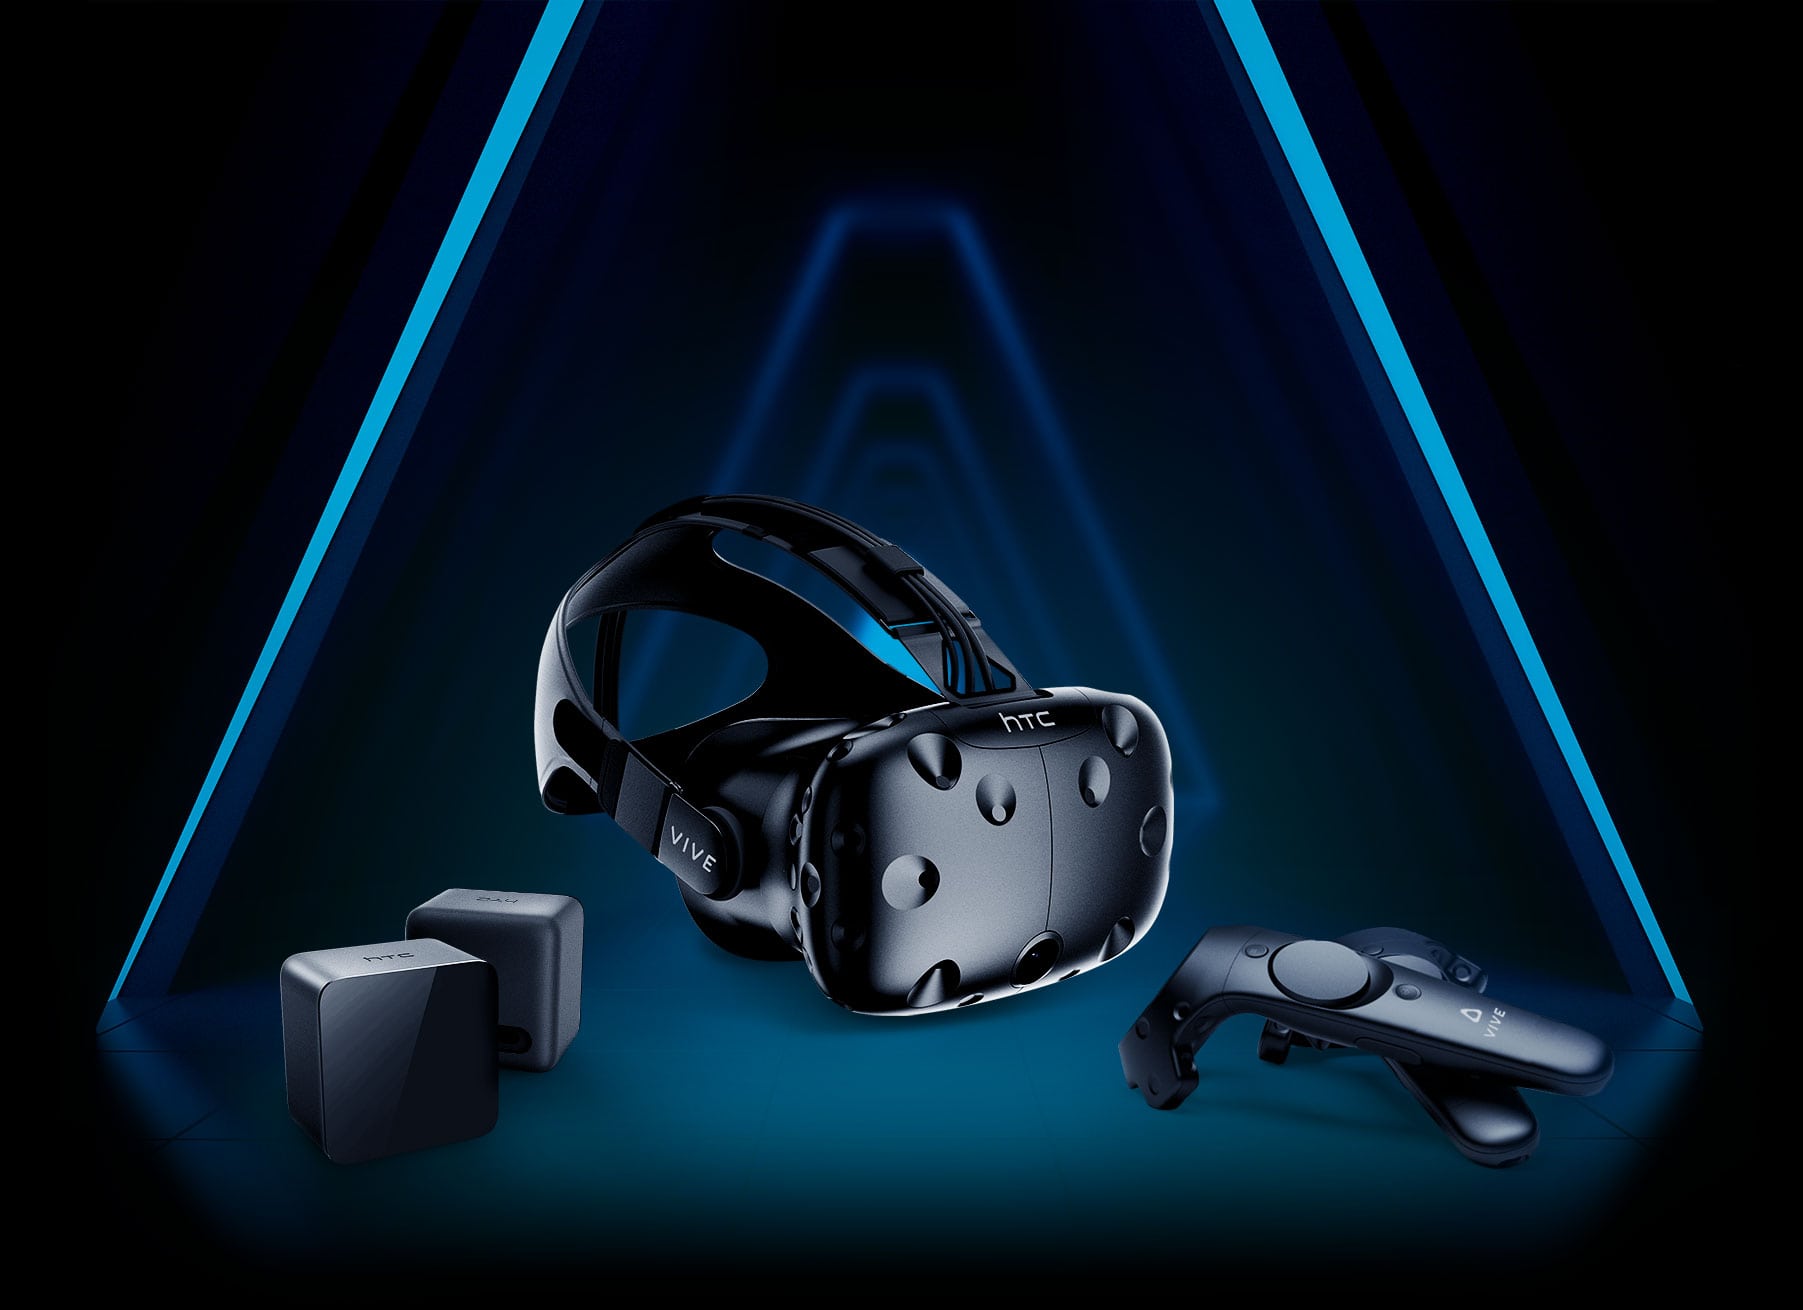 انفيديا و HTC ترفعان من تجربة الواقع الافتراضي ضمن مؤتمر GTC2018